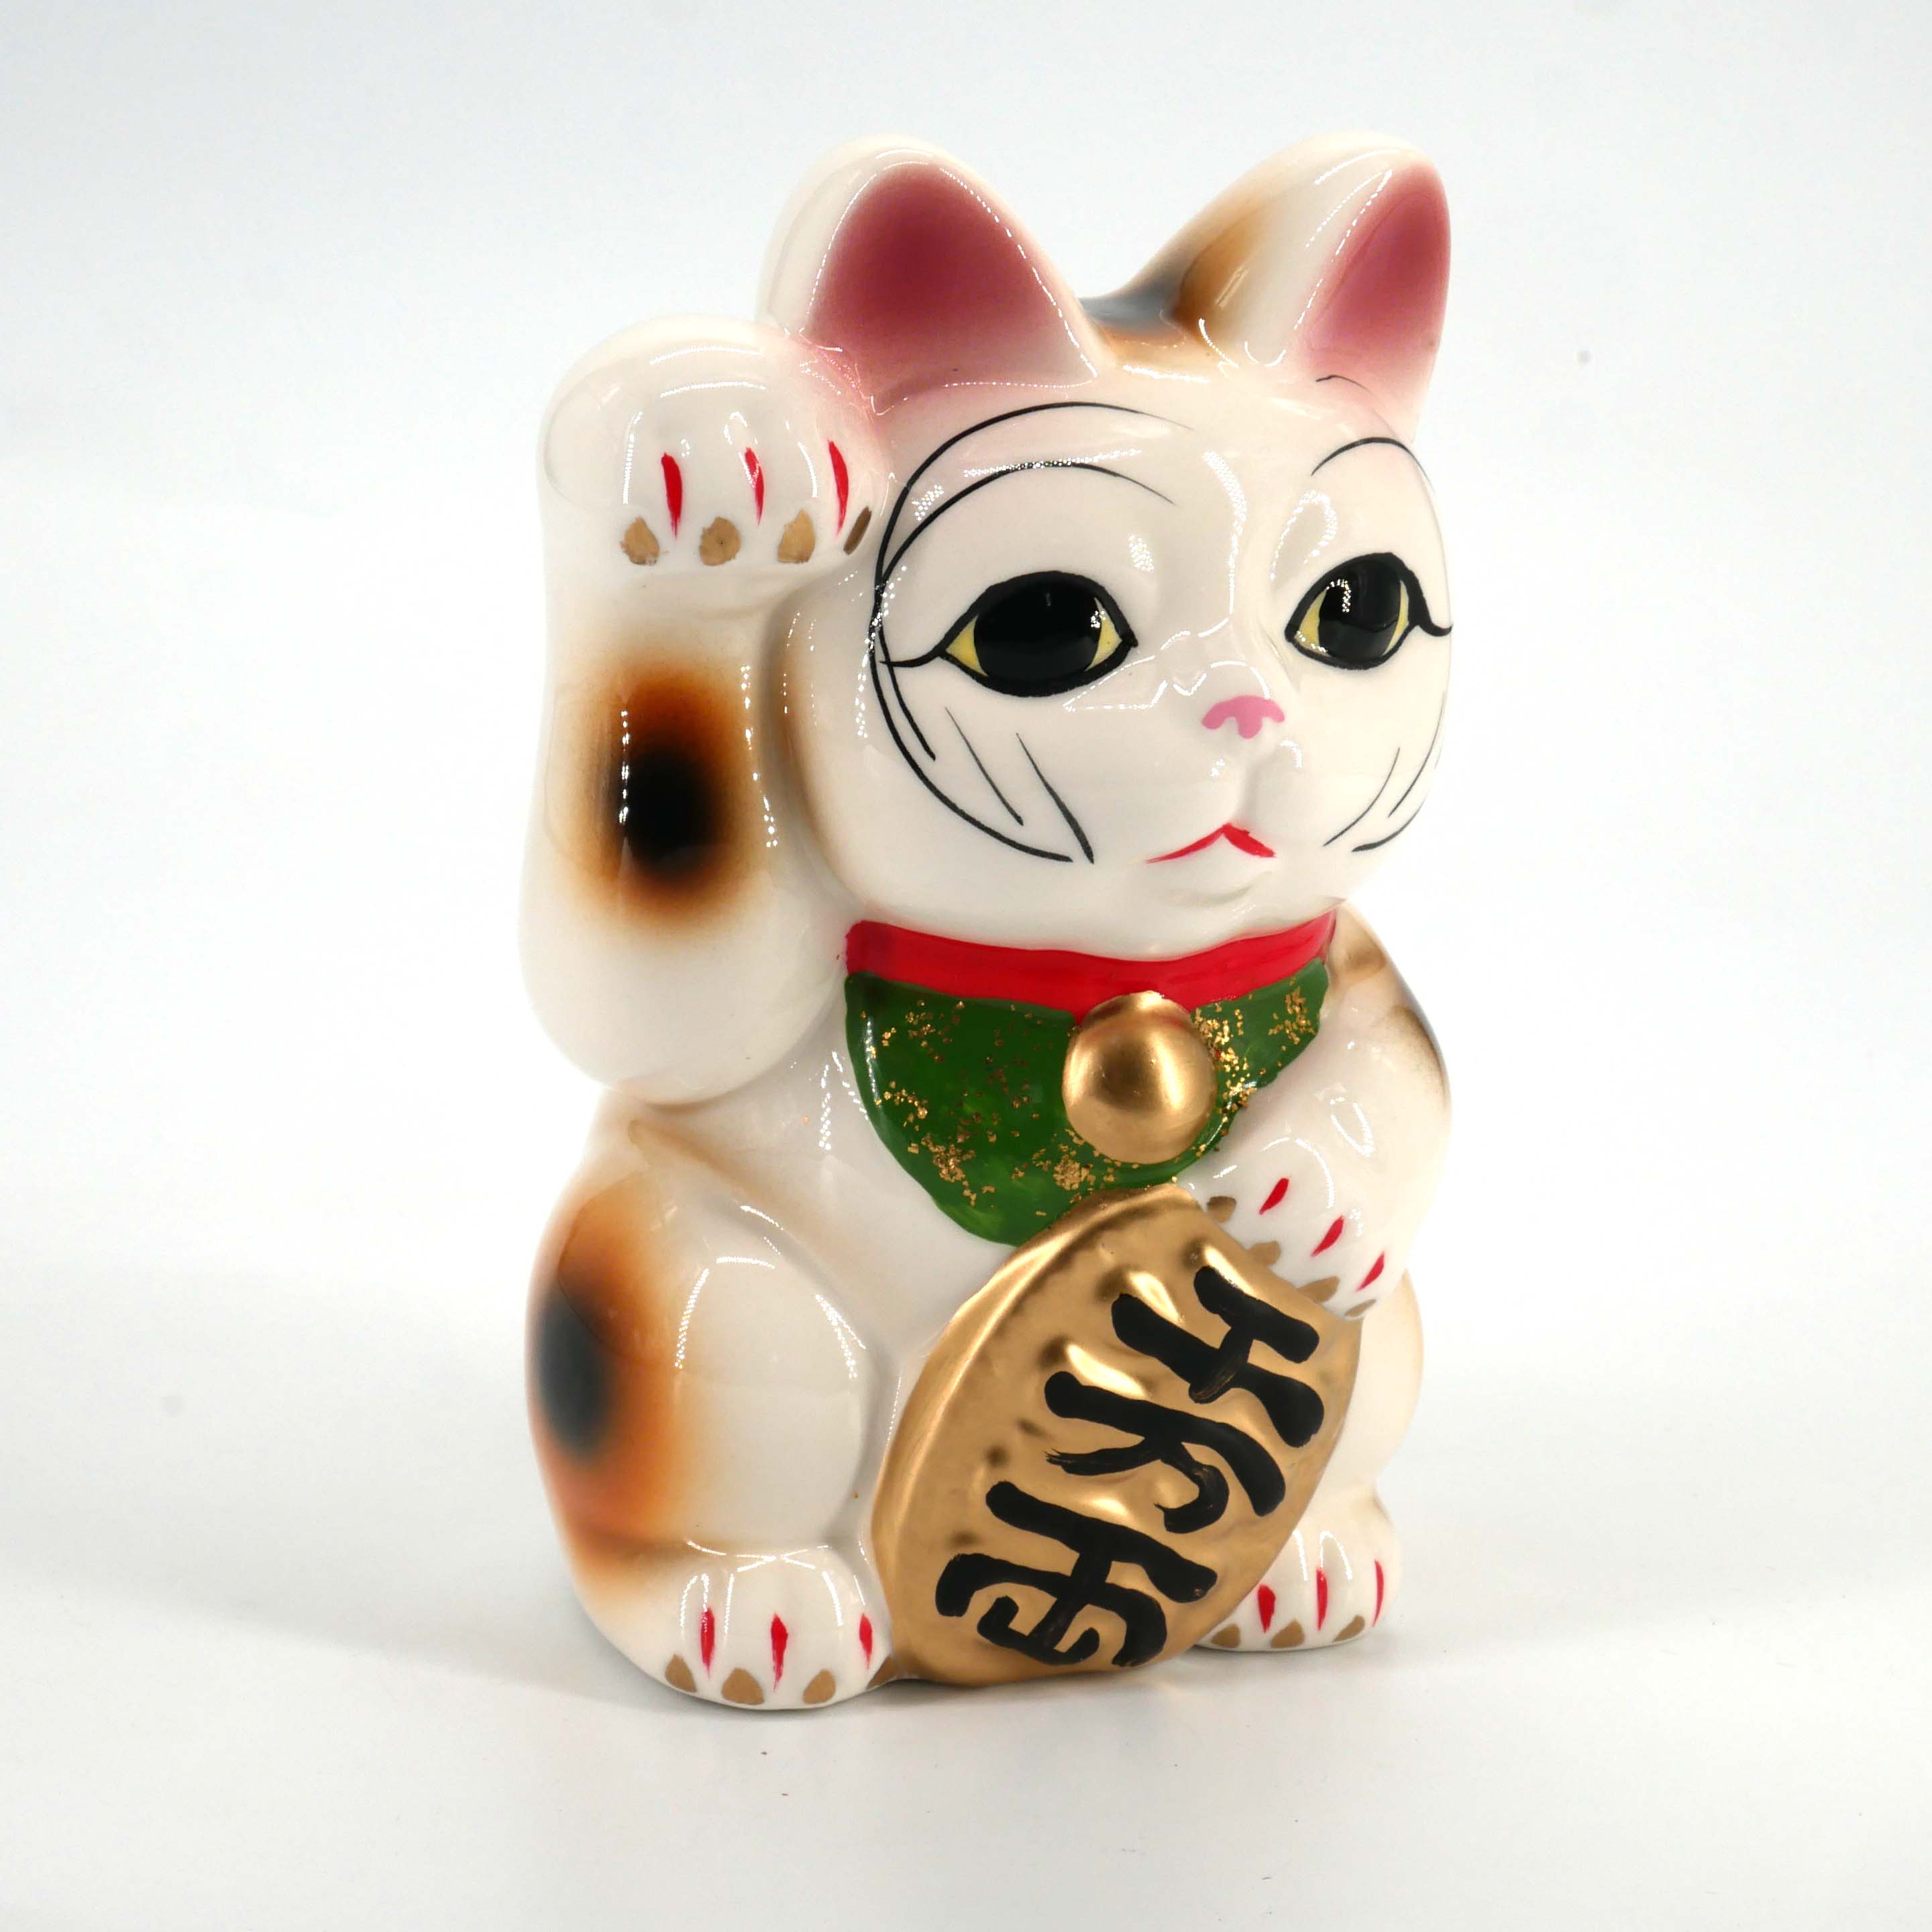 Chat blanc géant patte droite levée manekineko tirelire japonaise